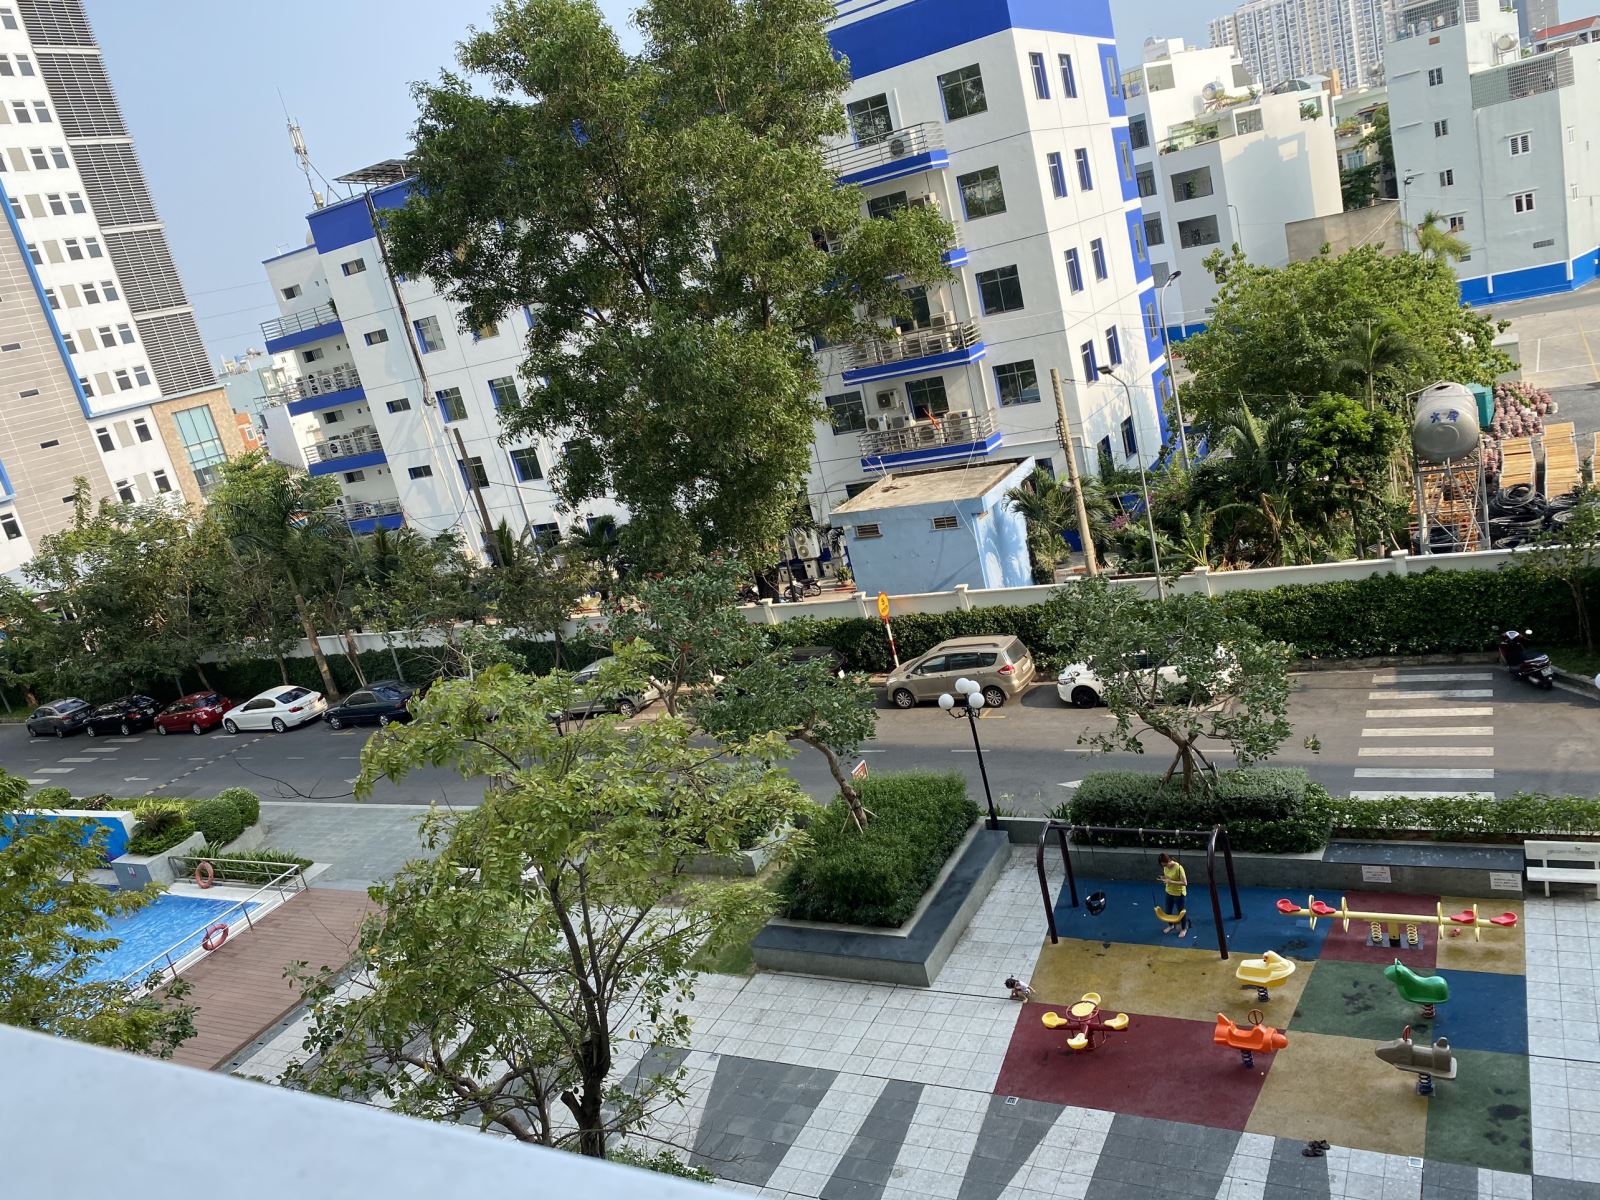 Bán căn hộ chung cư Melody Residences Tân Phú